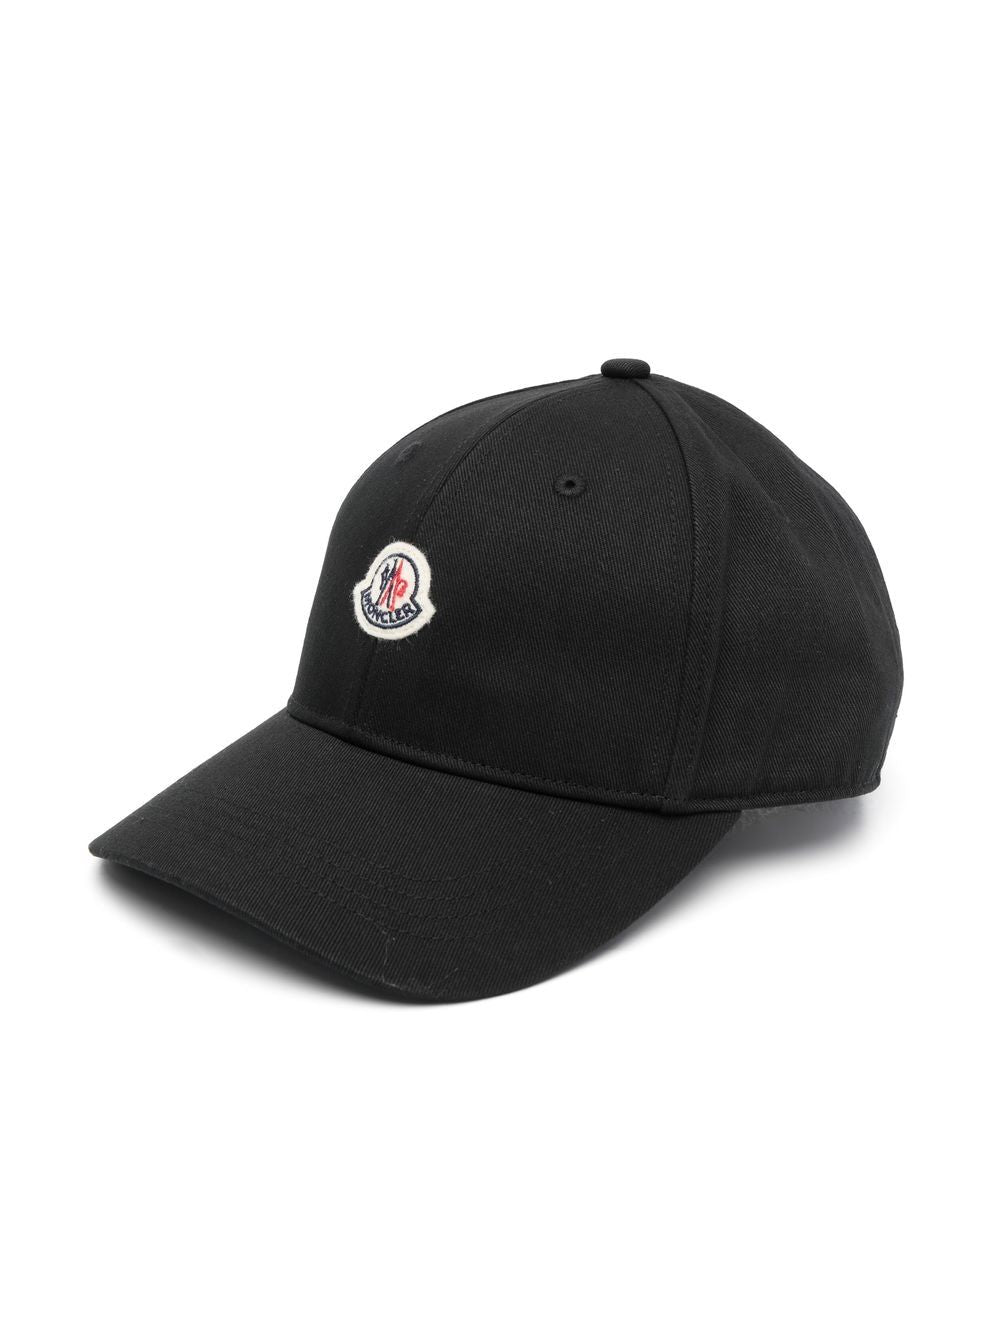 Black children's hat with logo